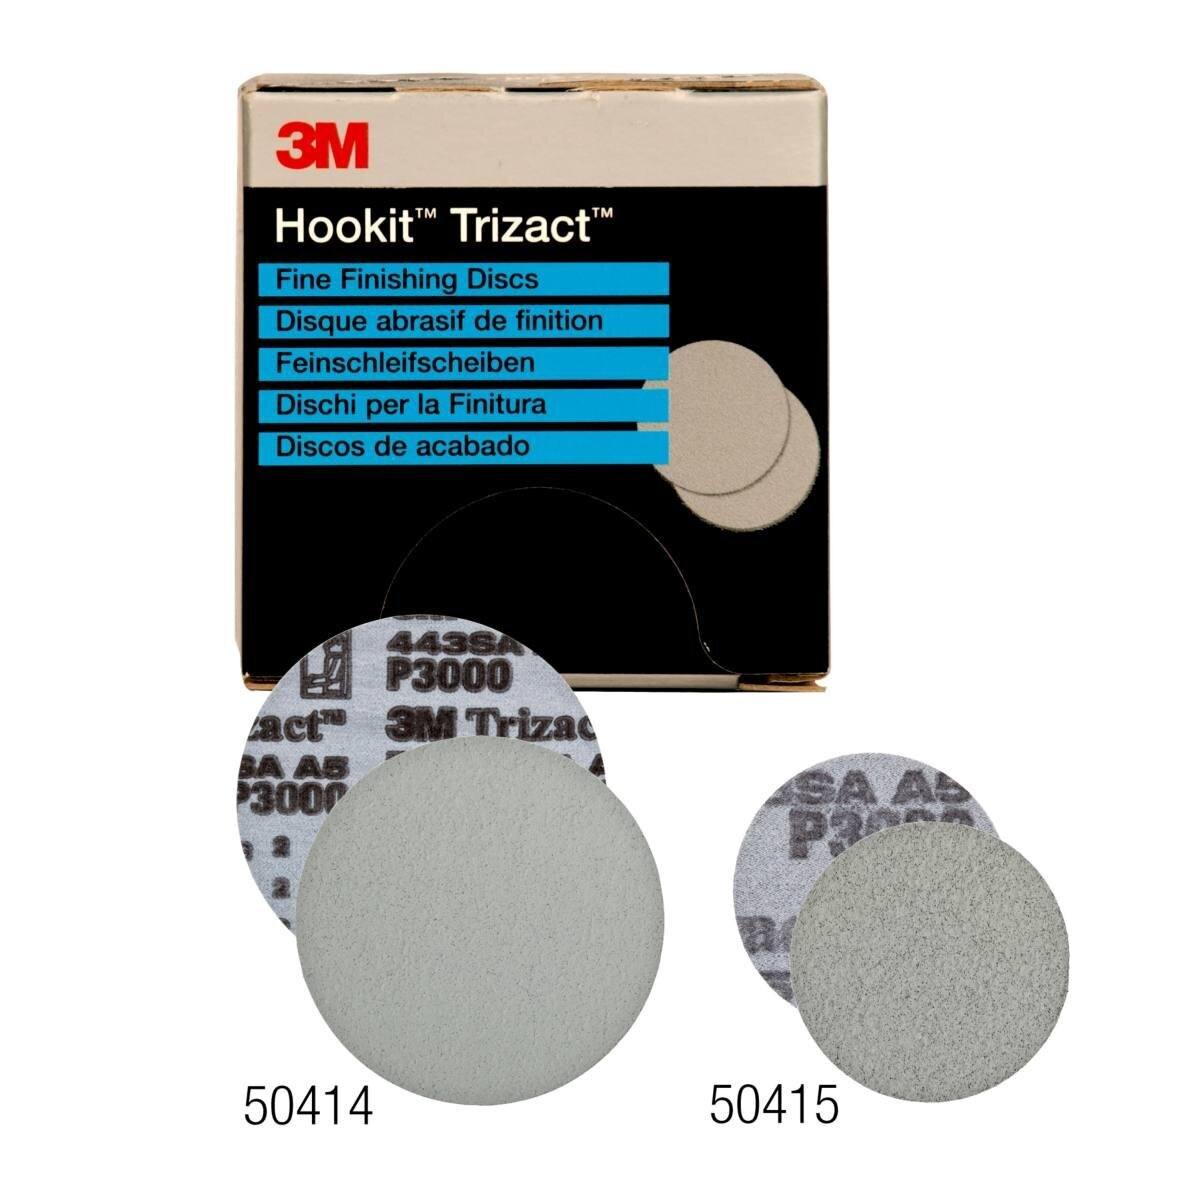 Dischi abrasivi 3M Trizact per finitura fine 443SA, grigio, 150 mm, P8000